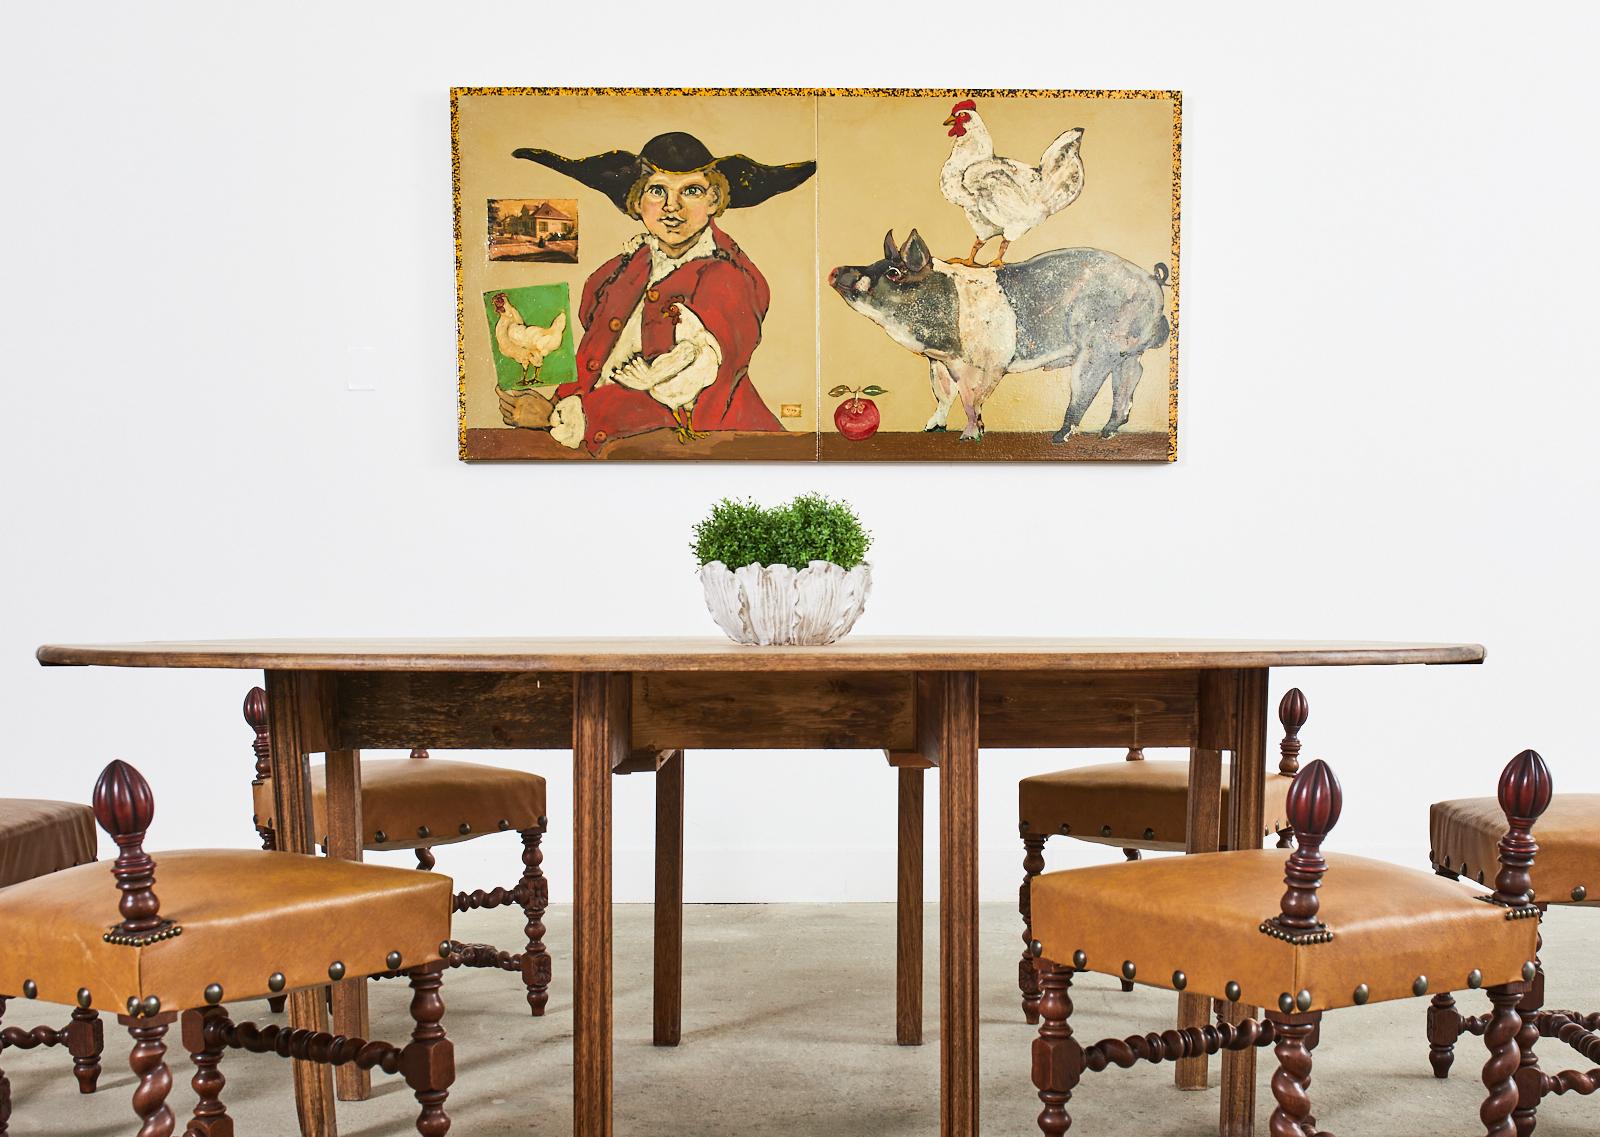 Grande peinture fantaisiste à l'huile sur toile représentant un fermier provincial français du 18e siècle avec des poulets et un cochon. Peinture de la fin du 20e siècle d'Ira Yeager (Américain, 1938-2022) réalisée en joignant deux toiles de 36